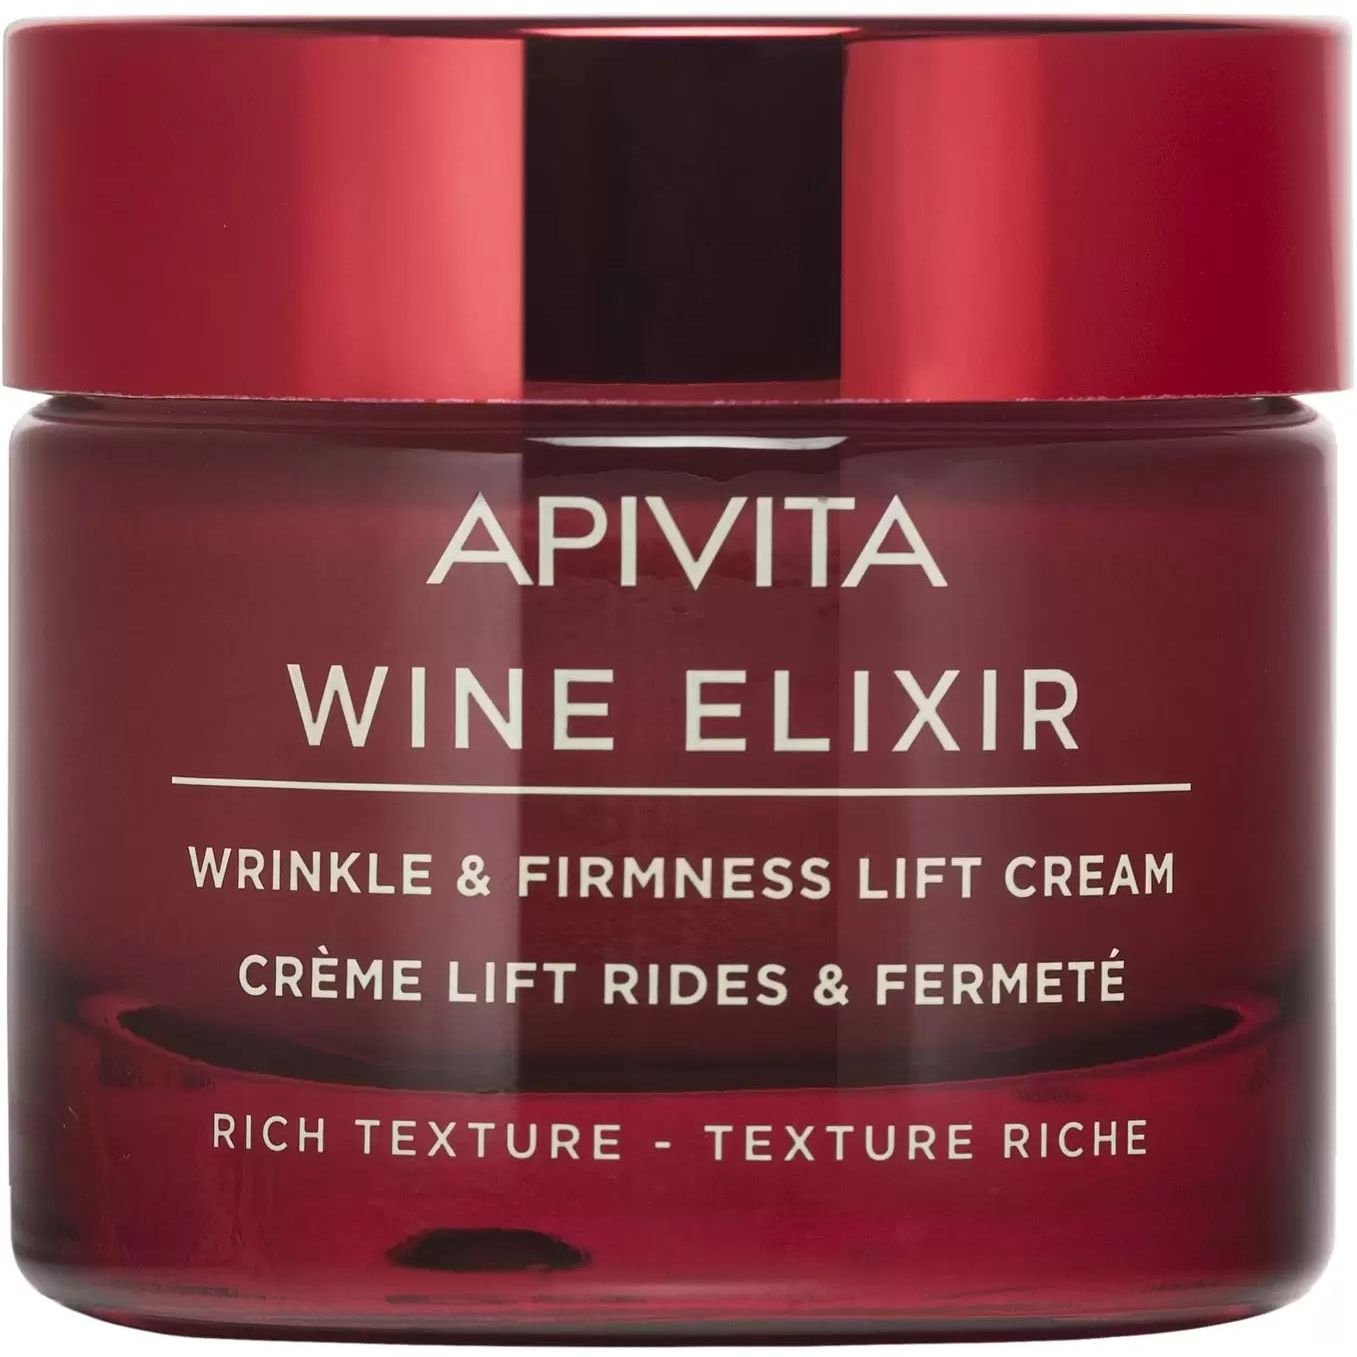 Крем-лифтинг насыщенной текстуры Apivita Wine Elixir для борьбы с морщинами и повышения упругости, 50 мл - фото 1